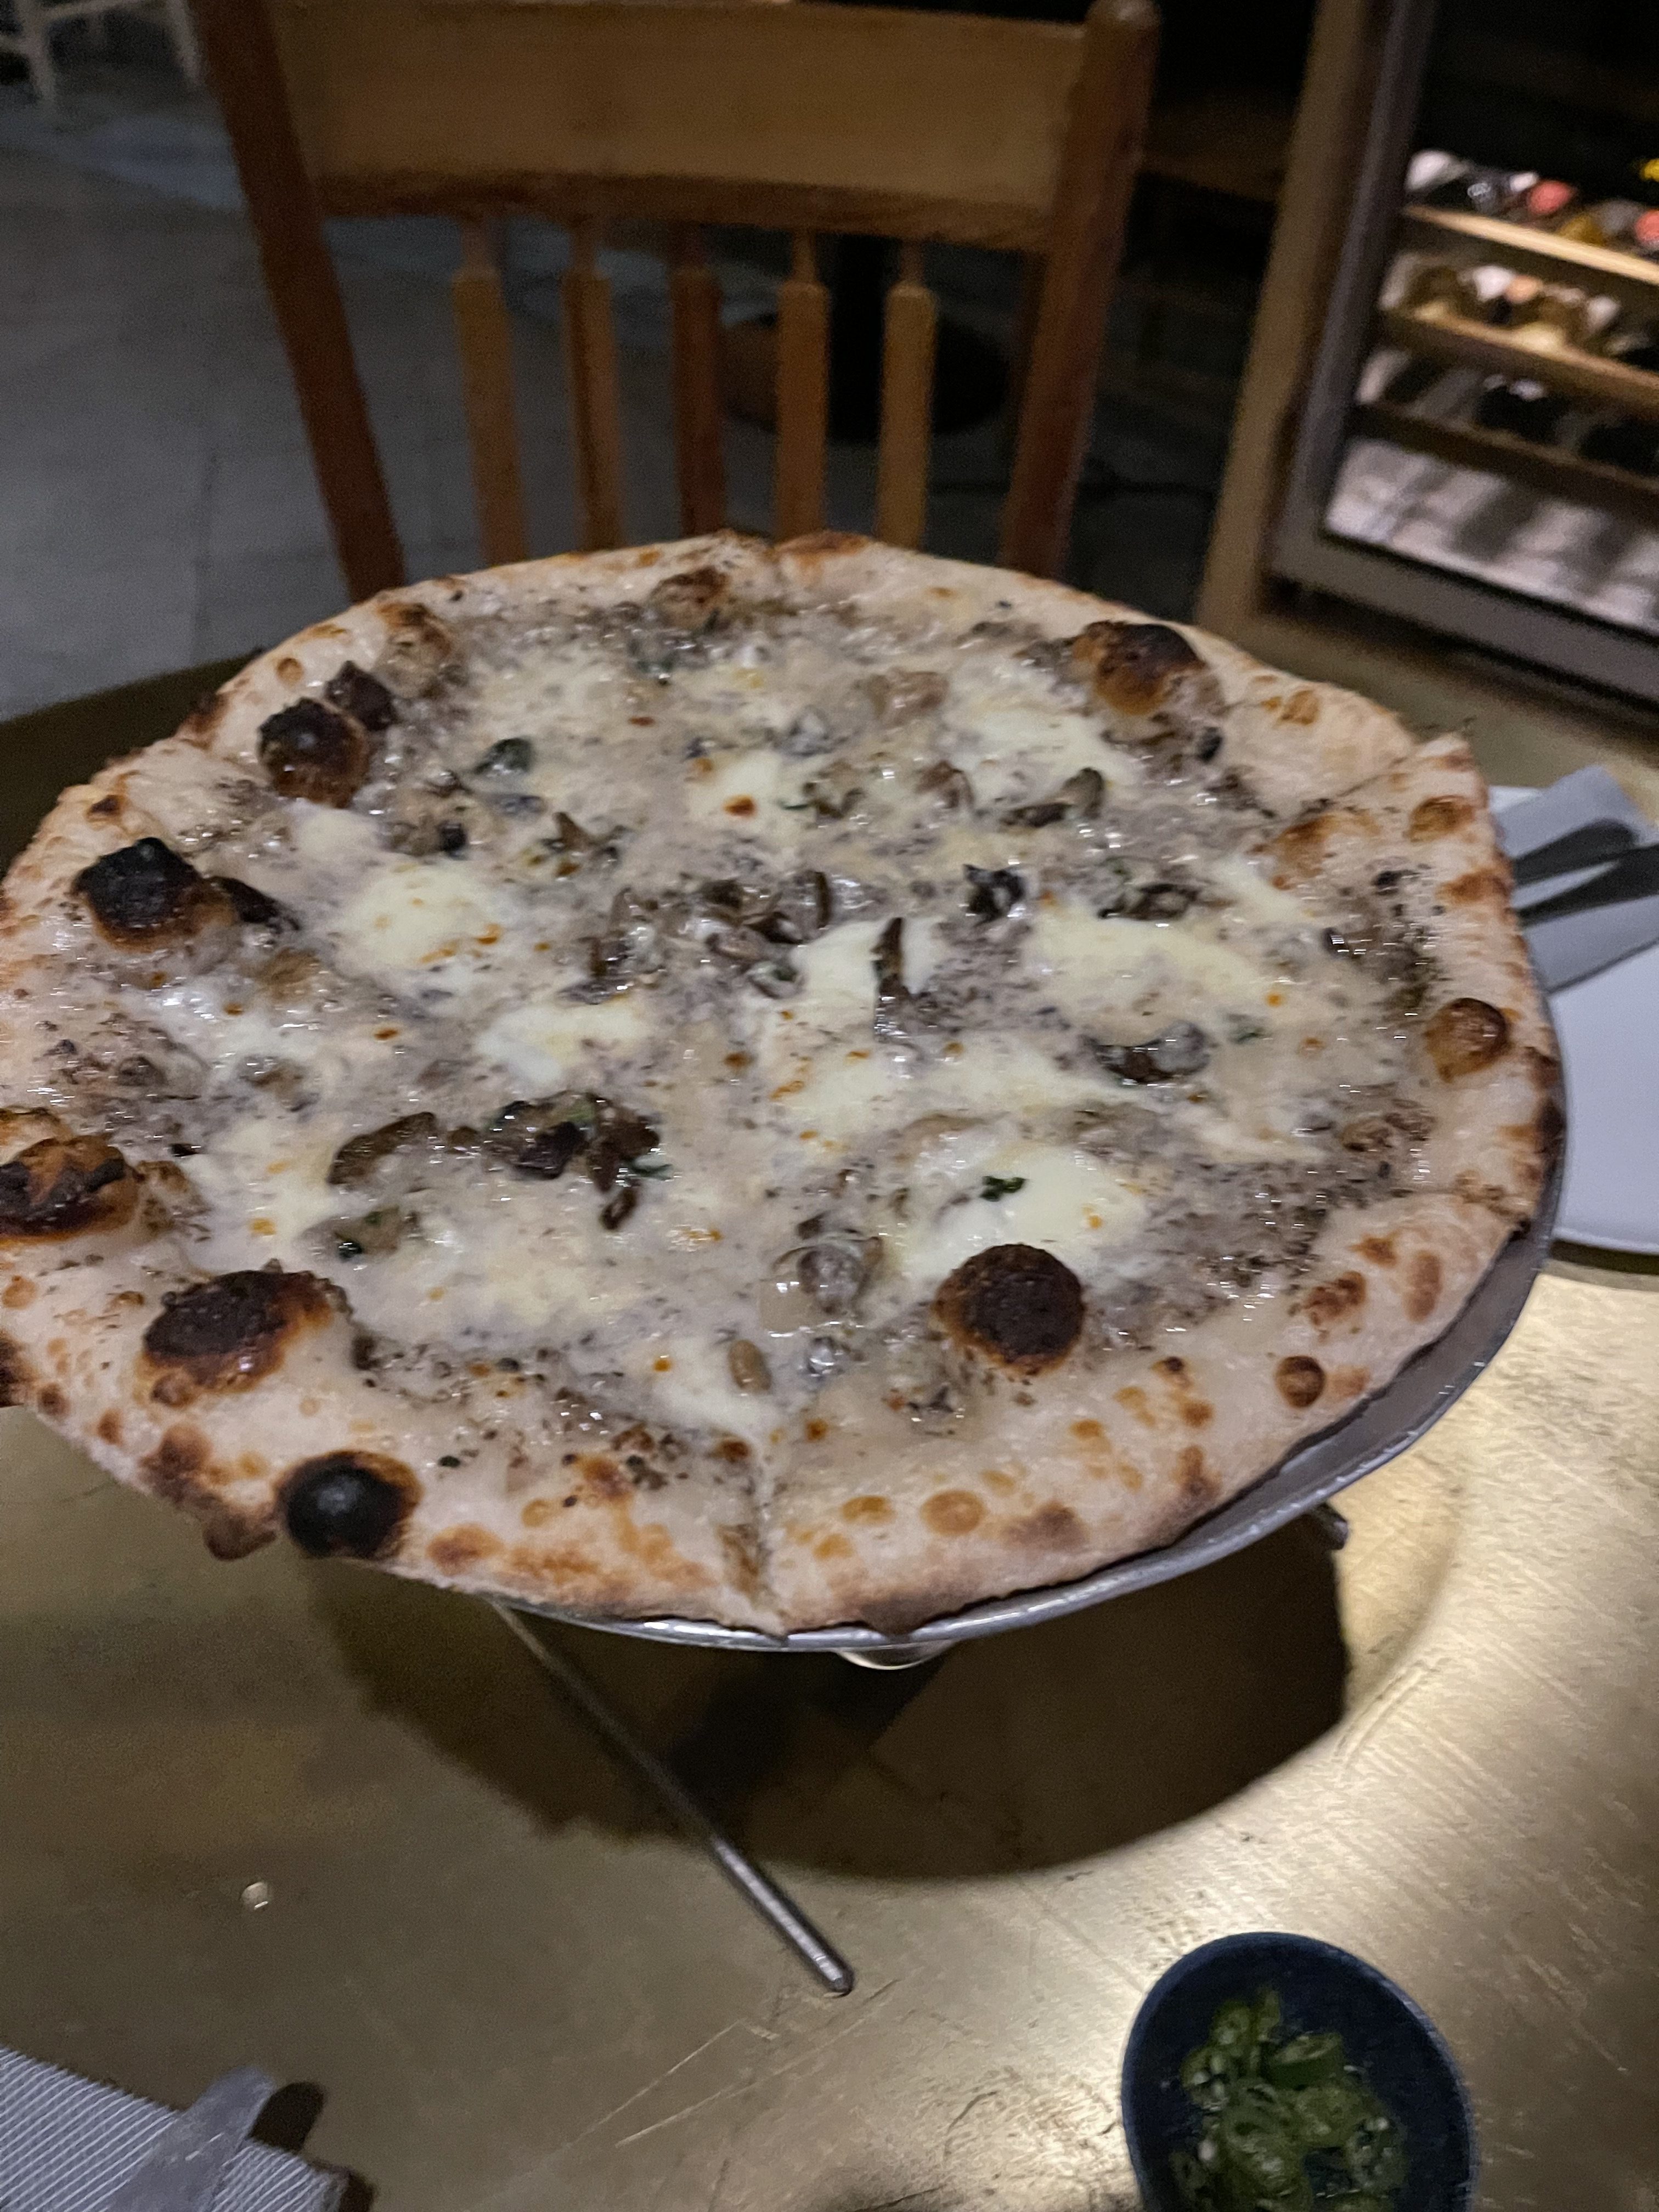 the mushroom pizza, drool!